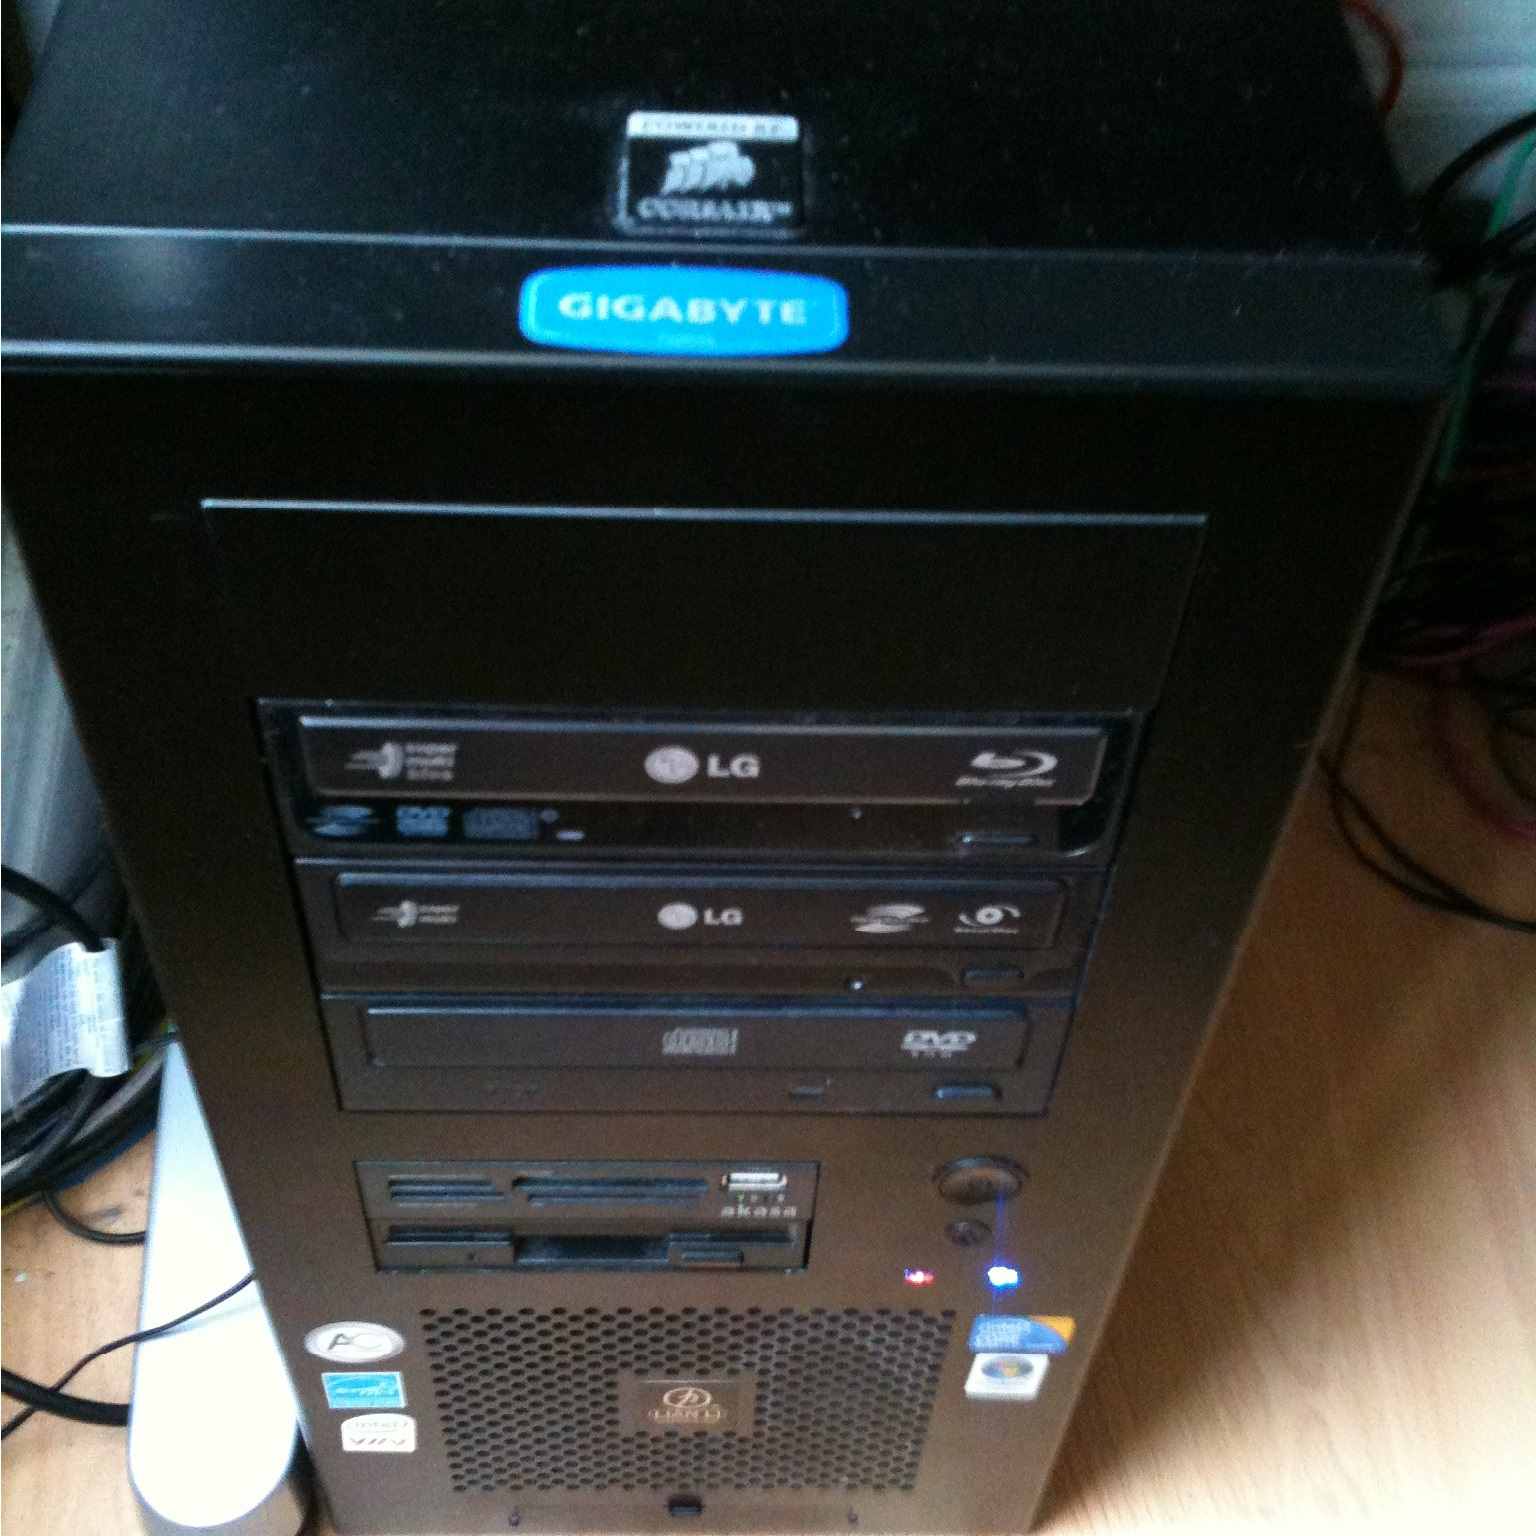 My 2009 PC